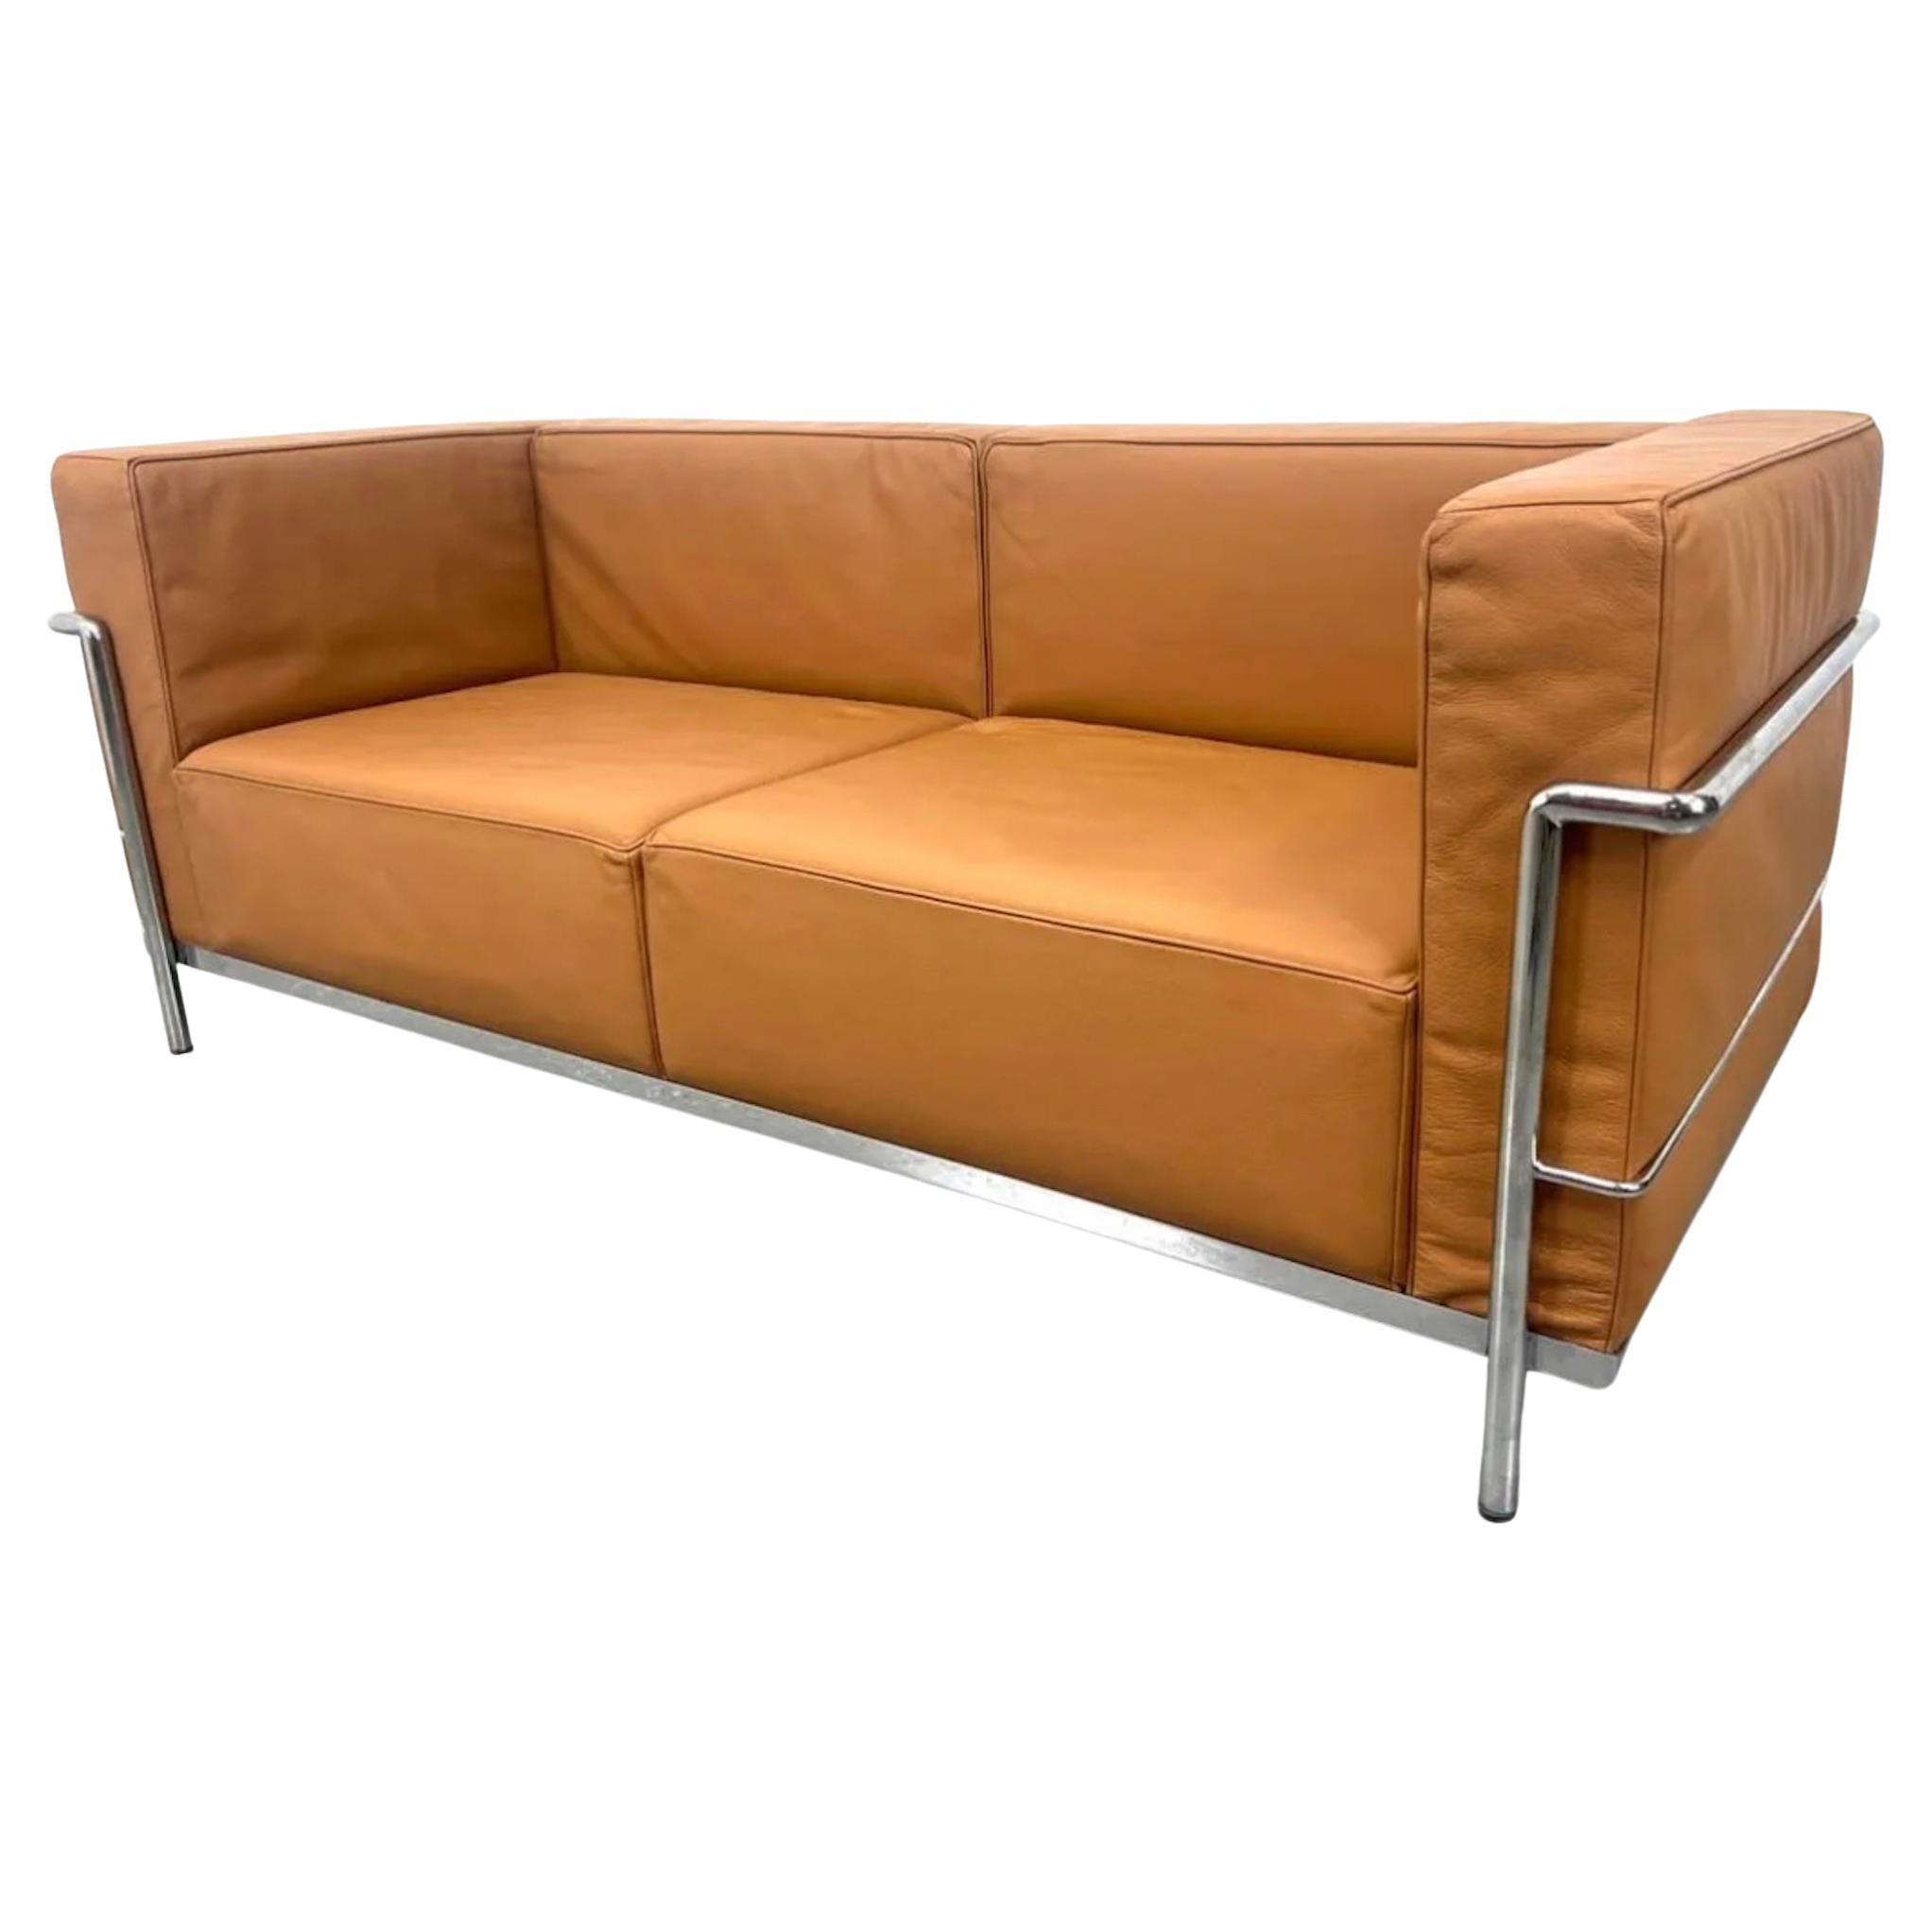 Vintage 2-Sitzer Sofa oder Lovseat von Le Corbusier. Modell LC2 in Tan Leder in sehr gutem Vintage-Zustand. Dreifach verchromter Stahlrahmen. Hergestellt von Gordon International. Alle Riemen sind gut, alle Kissen kommen heraus. Das Hotel liegt in